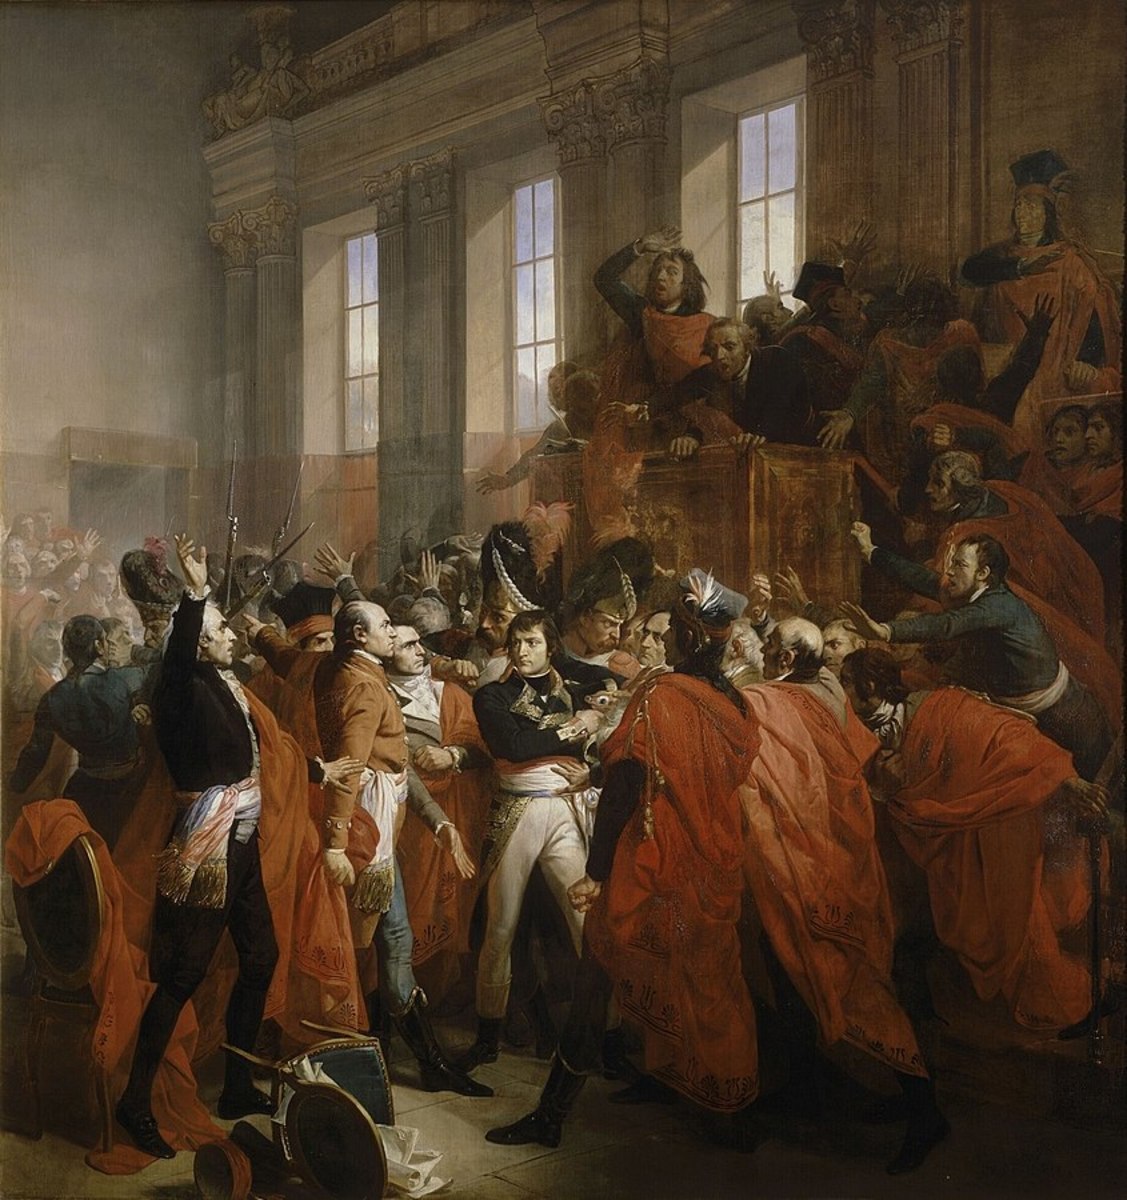 Napoleon Bonaparte in the coup d'état of 18 Brumaire in Saint-Cloud by Francois Bouchot